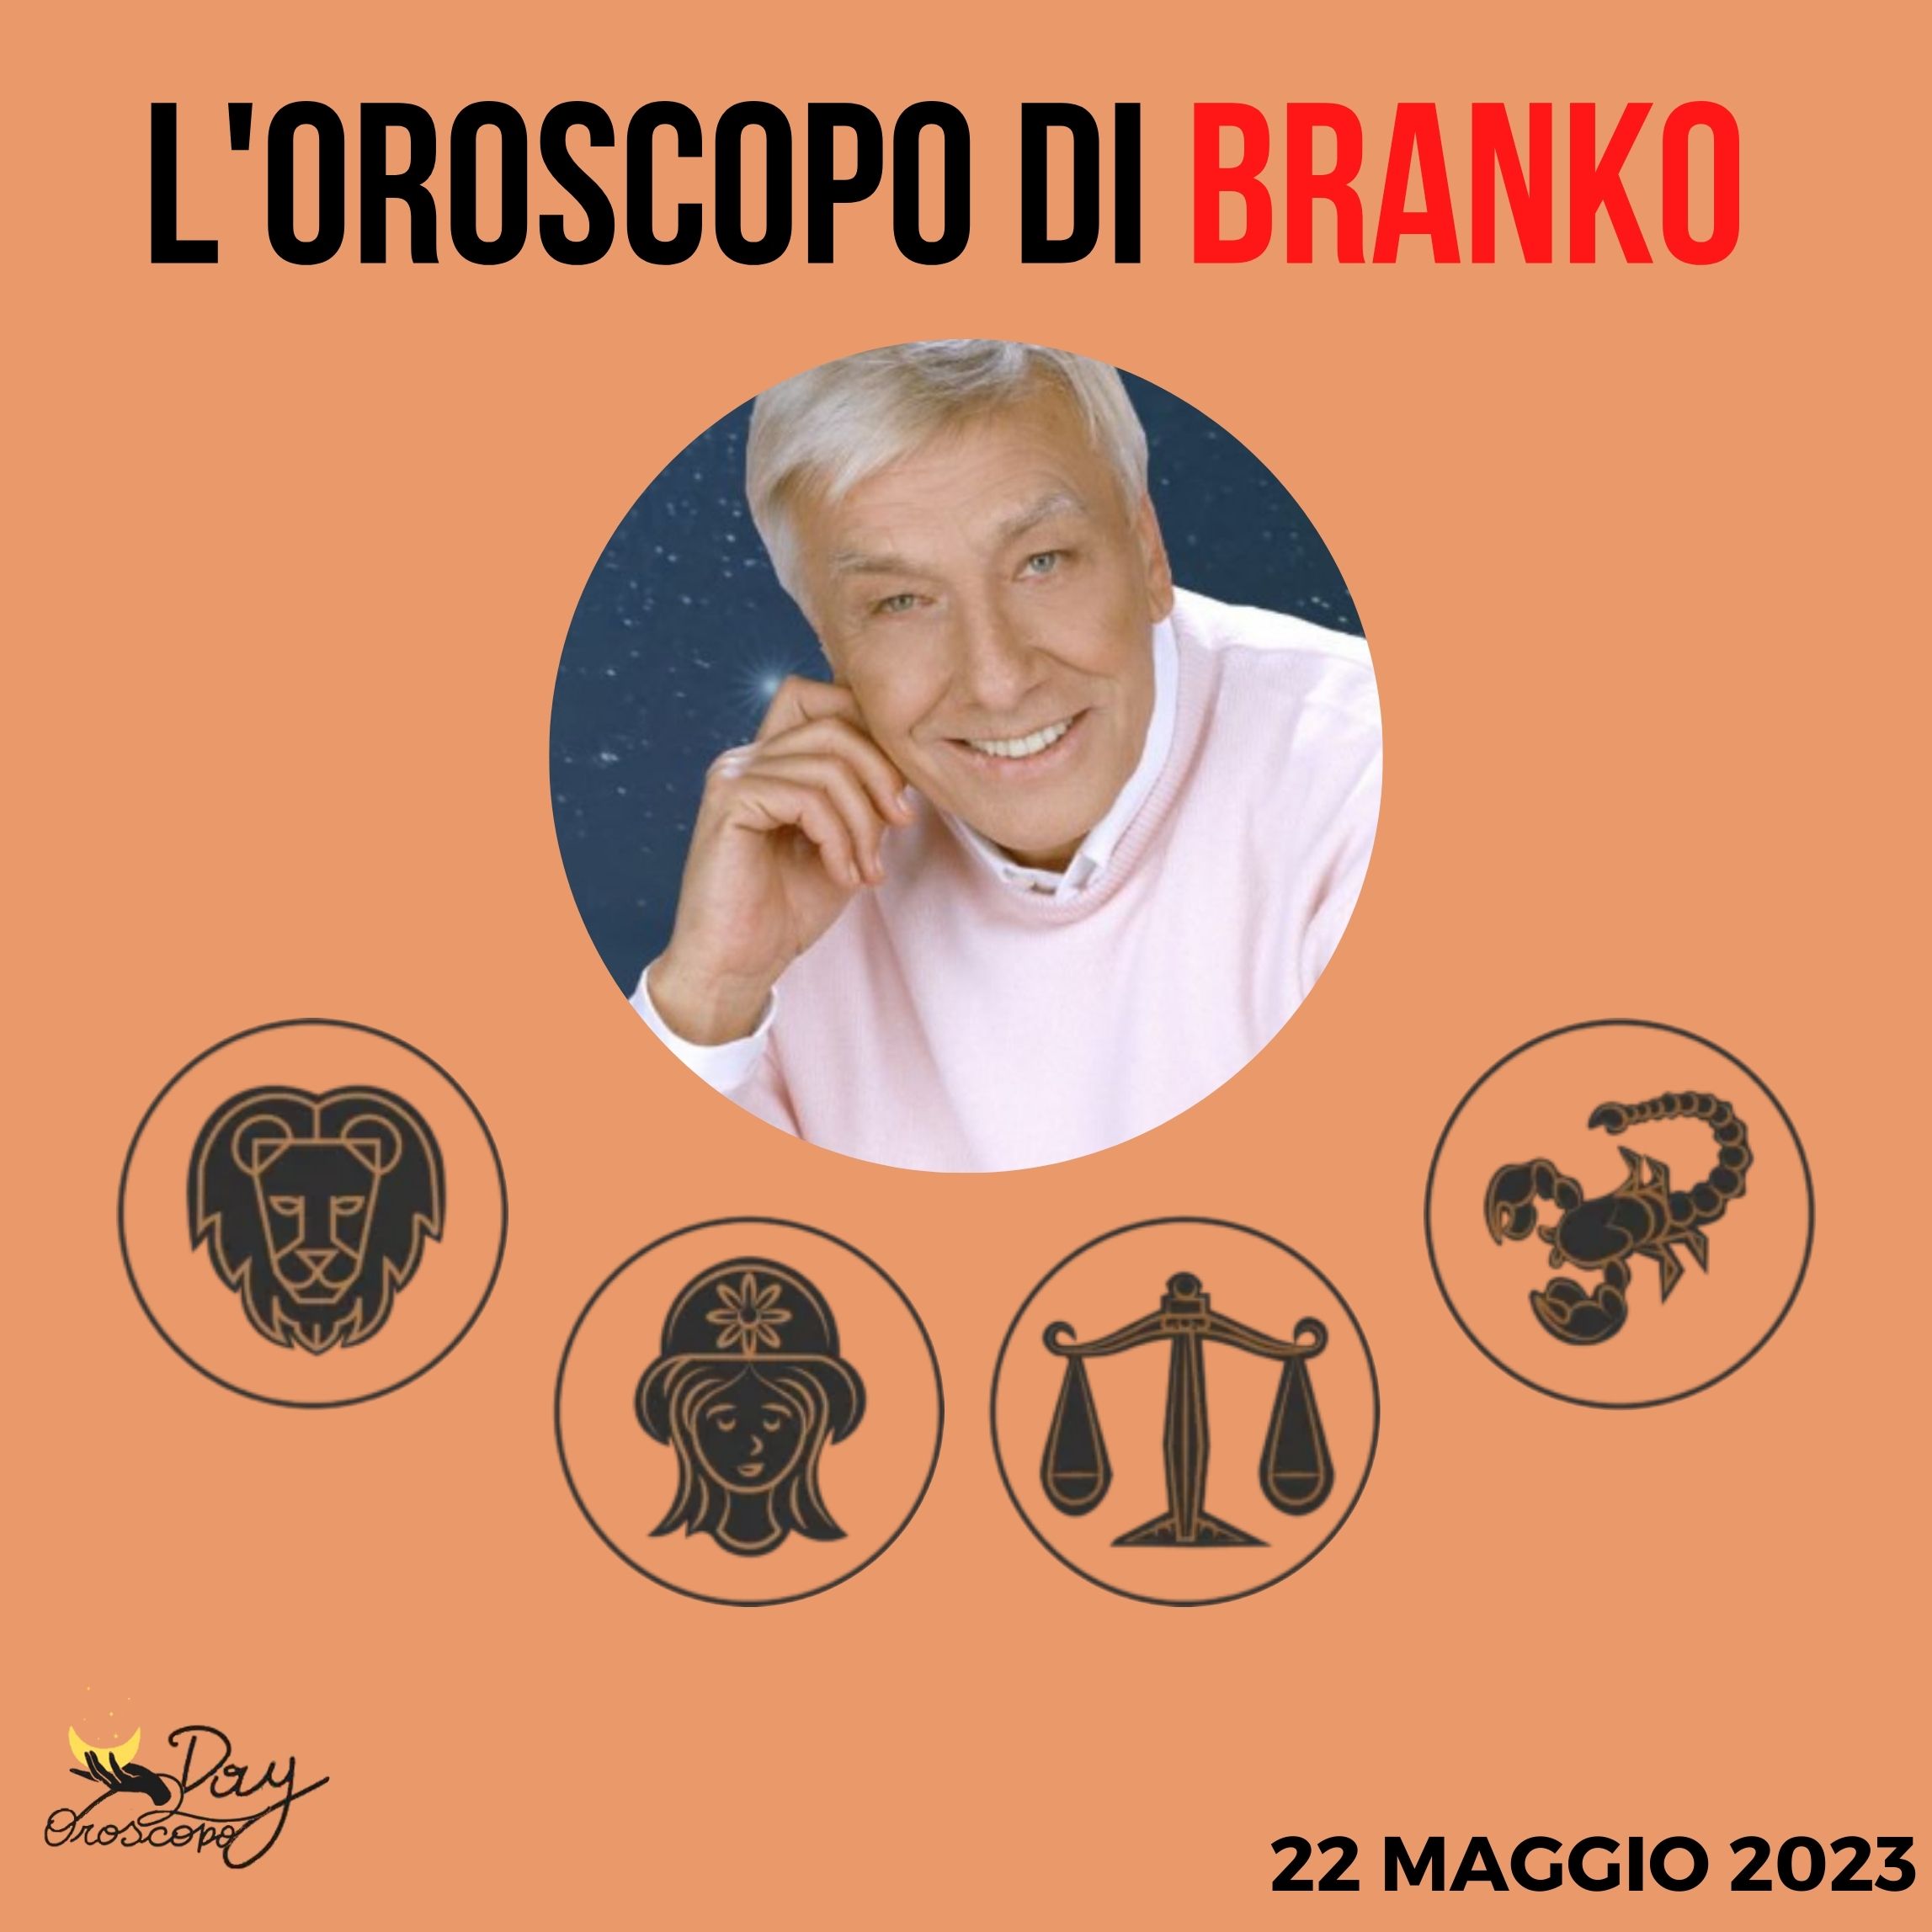 Oroscopo oggi domani Branko 22 maggio Leone Vergine Bilancia Scorpione